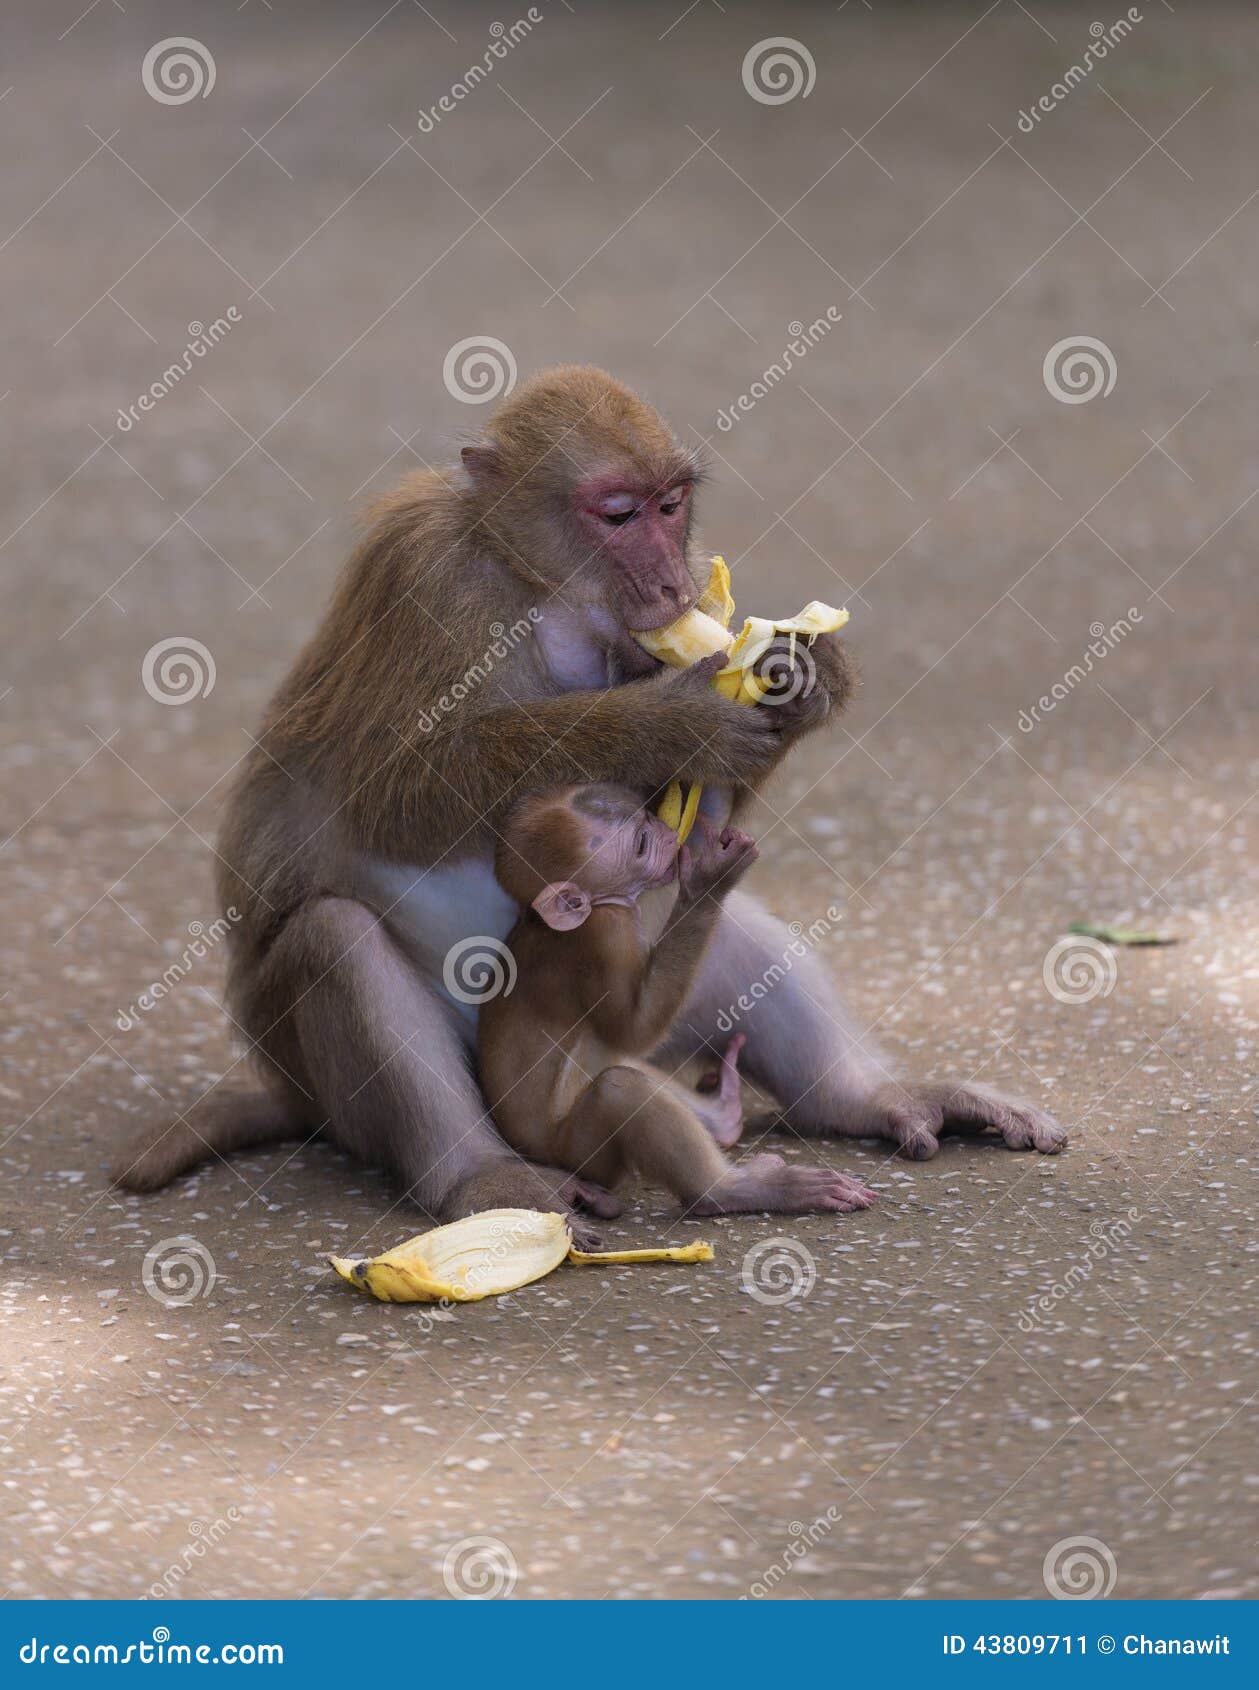 Сколько бананов едят обезьяны. Обезьяна с бананом. Обезьяна ест банан. Мартышка ест банан. ДВК обезьяны едят банан.